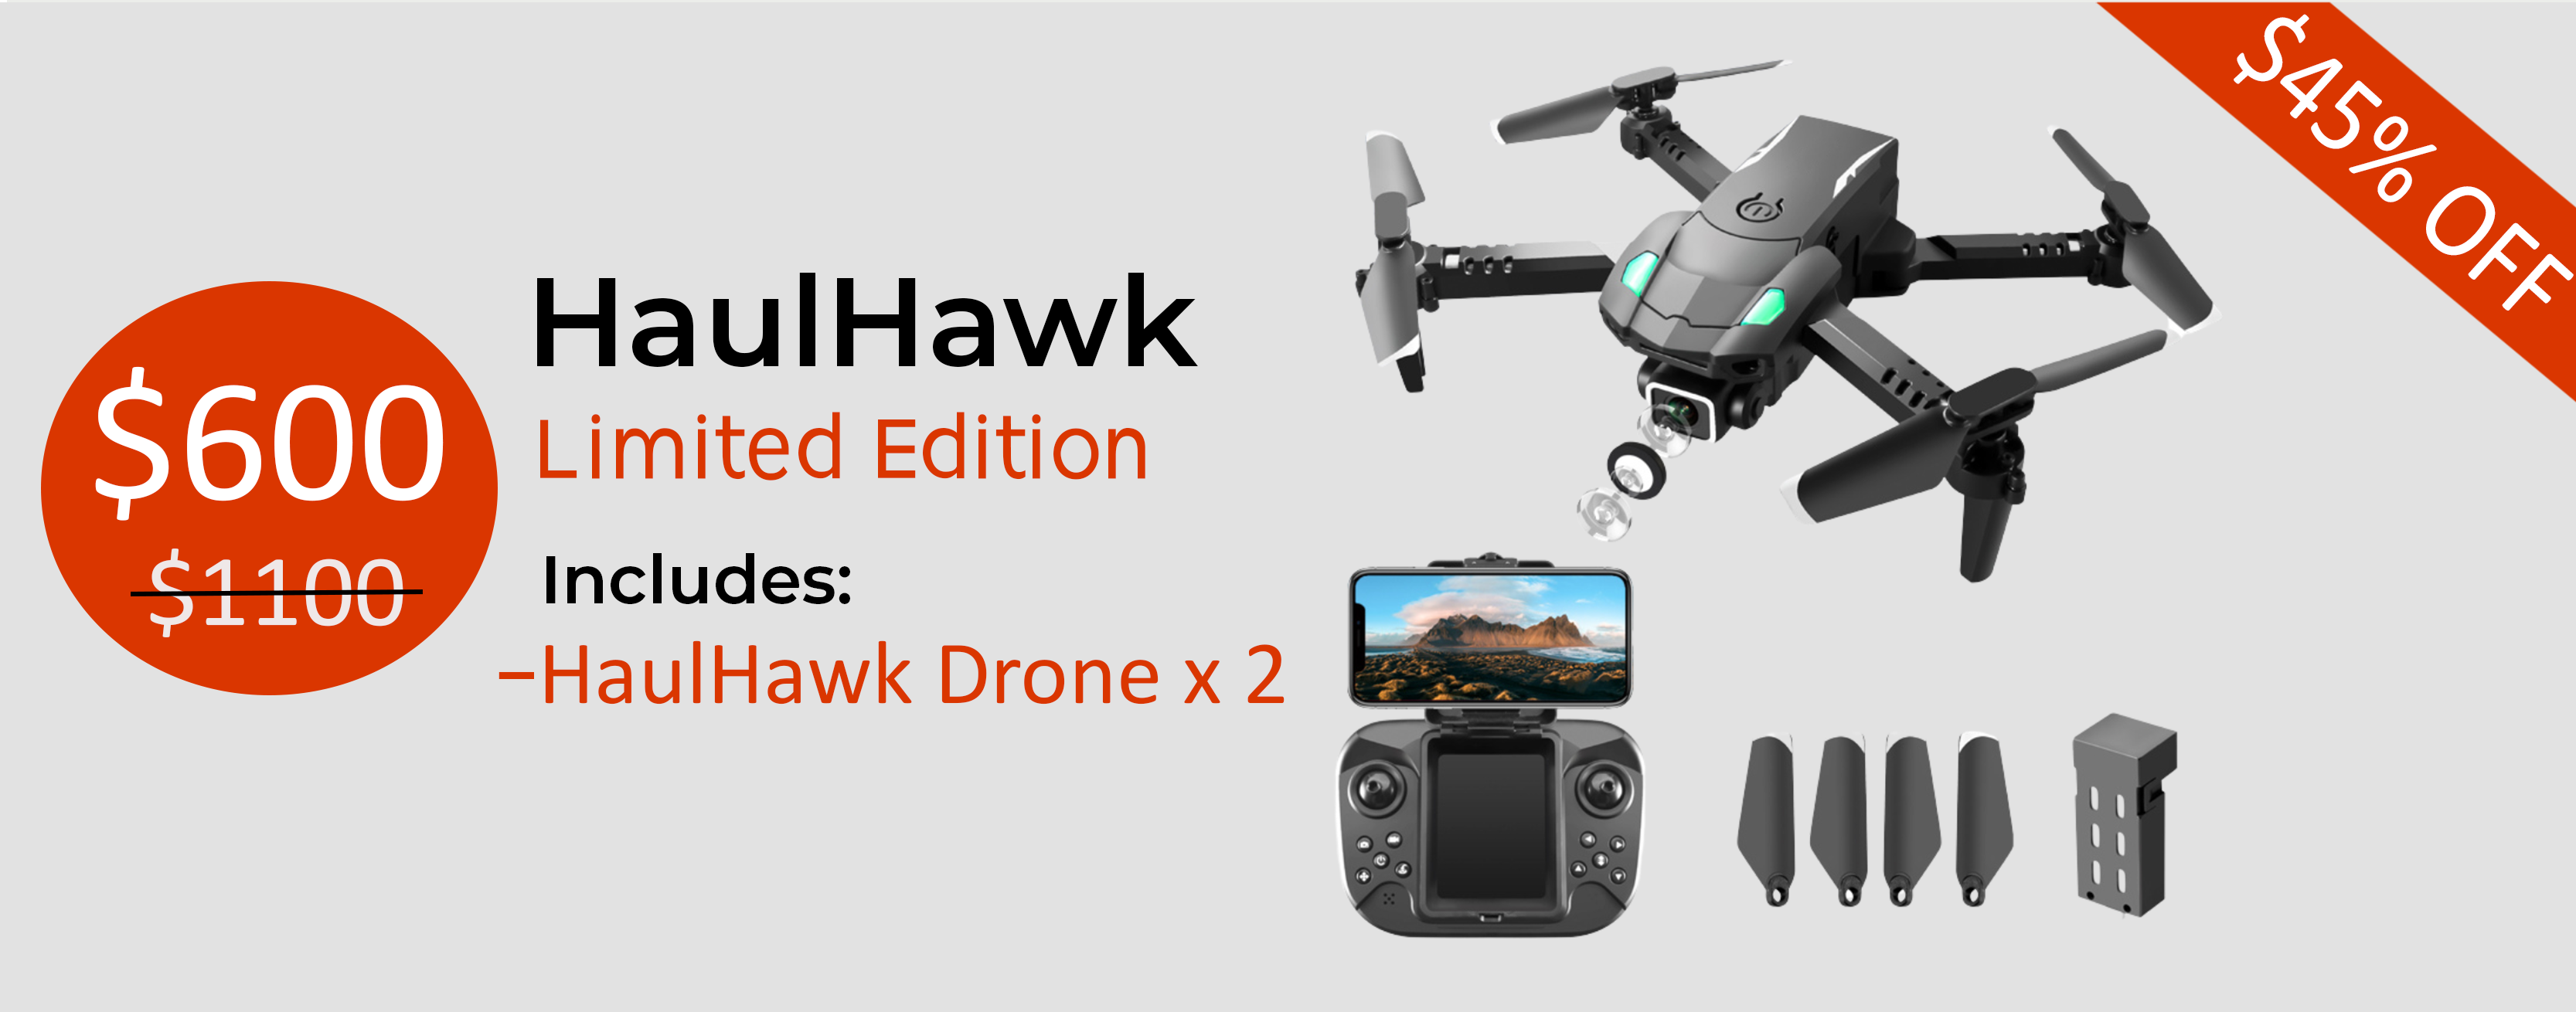 HaulHawk Drone Camera x 2

